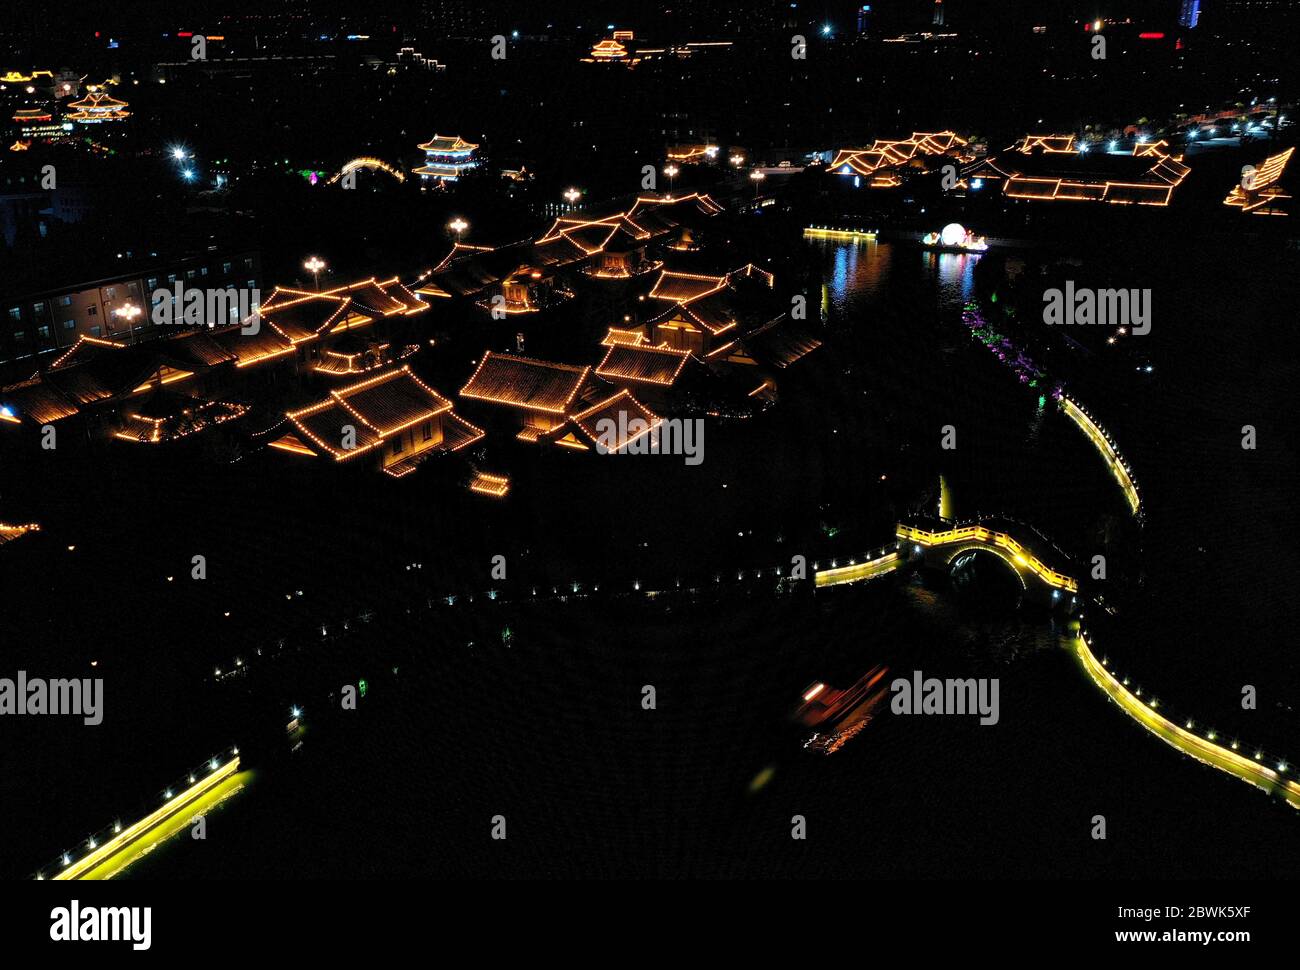 Kaifeng Juni 2020. Luftaufnahme vom 1. Juni 2020 zeigt landschaftlich reizvolle Beleuchtung entlang der Wasserstraßen in Kaifeng, der zentralchinesischen Provinz Henan. Die nächtliche Wirtschaft in Kaifeng hat begonnen, sich zu beleben, als die Abendgeschäfte der Stadt allmählich mit der Lockerung der COVID-19-Beschränkungen wieder eröffnet werden. Kredit: Li An/Xinhua/Alamy Live News Stockfoto